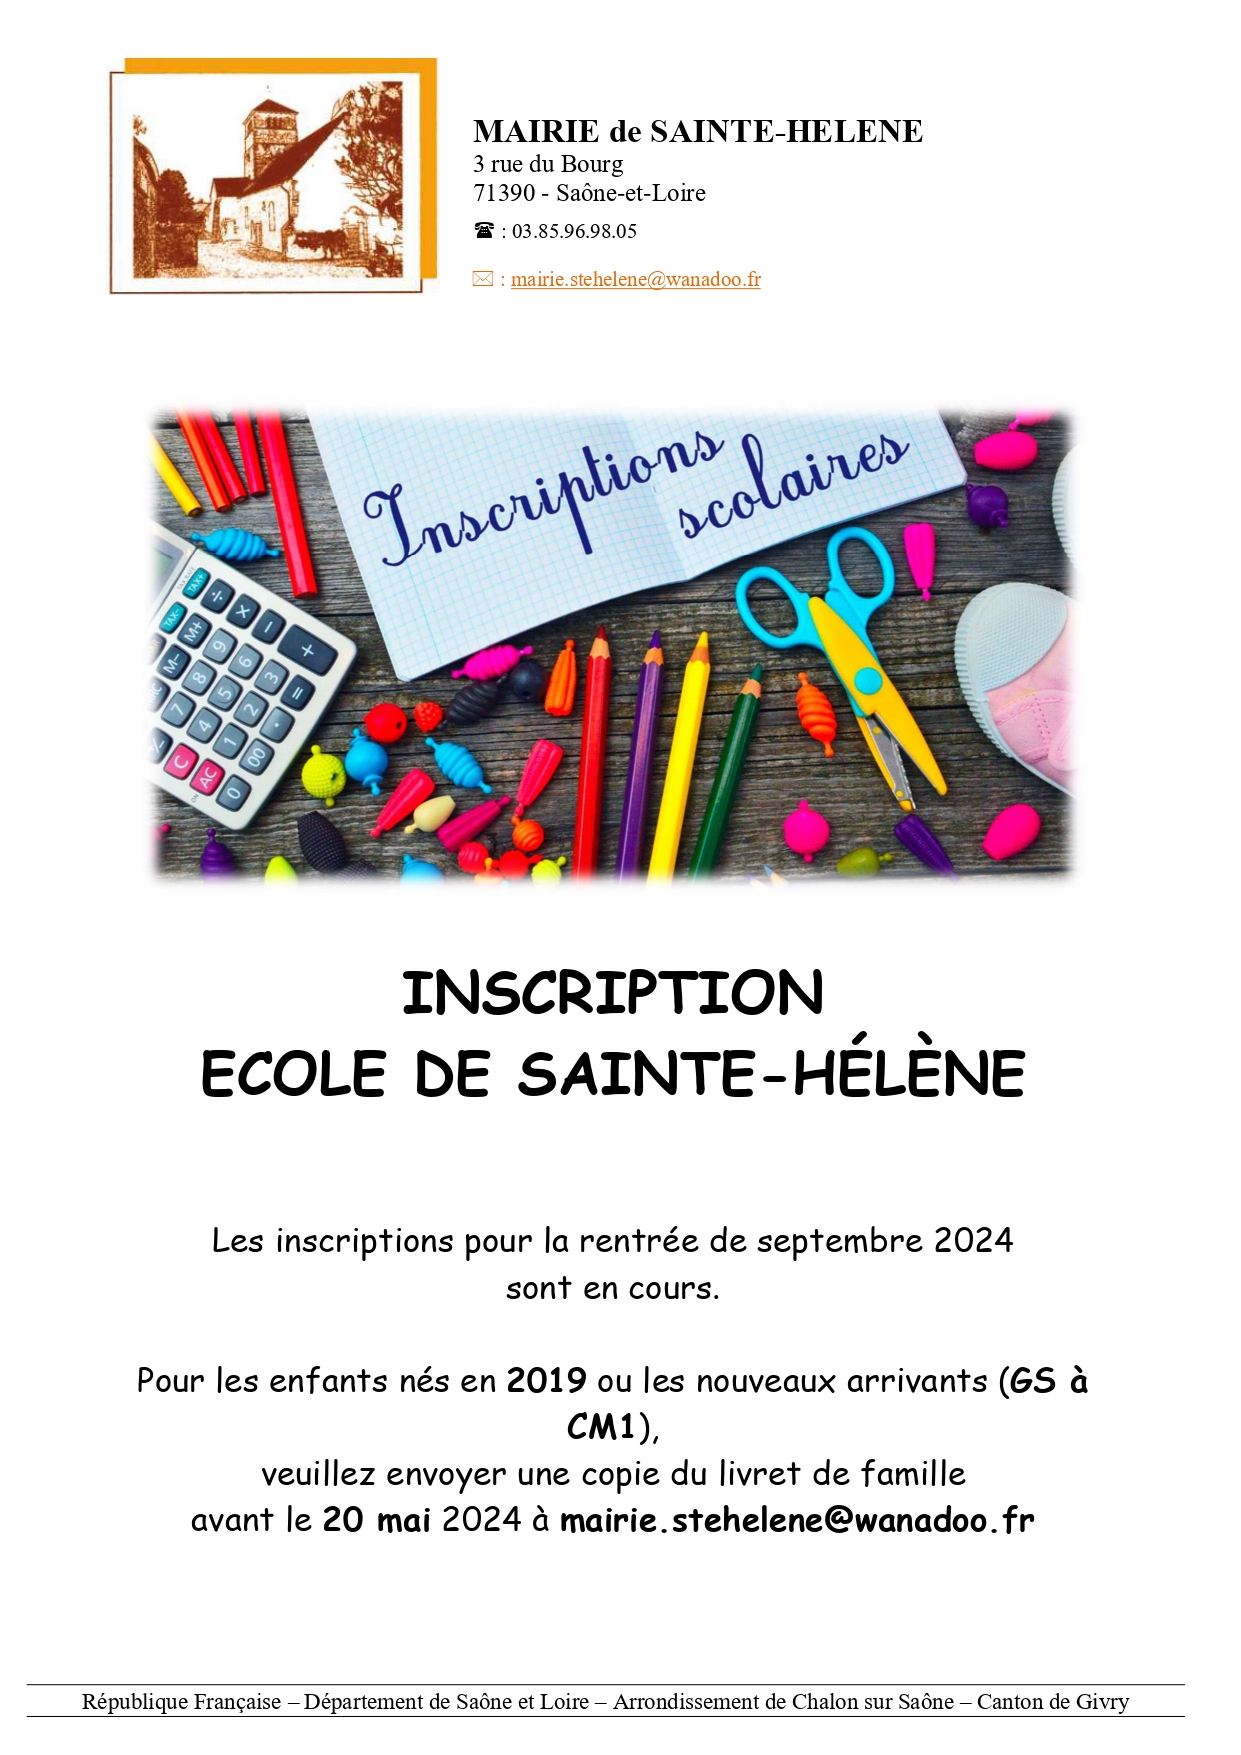 Inscriptions scolaire école Sainte-Hélène